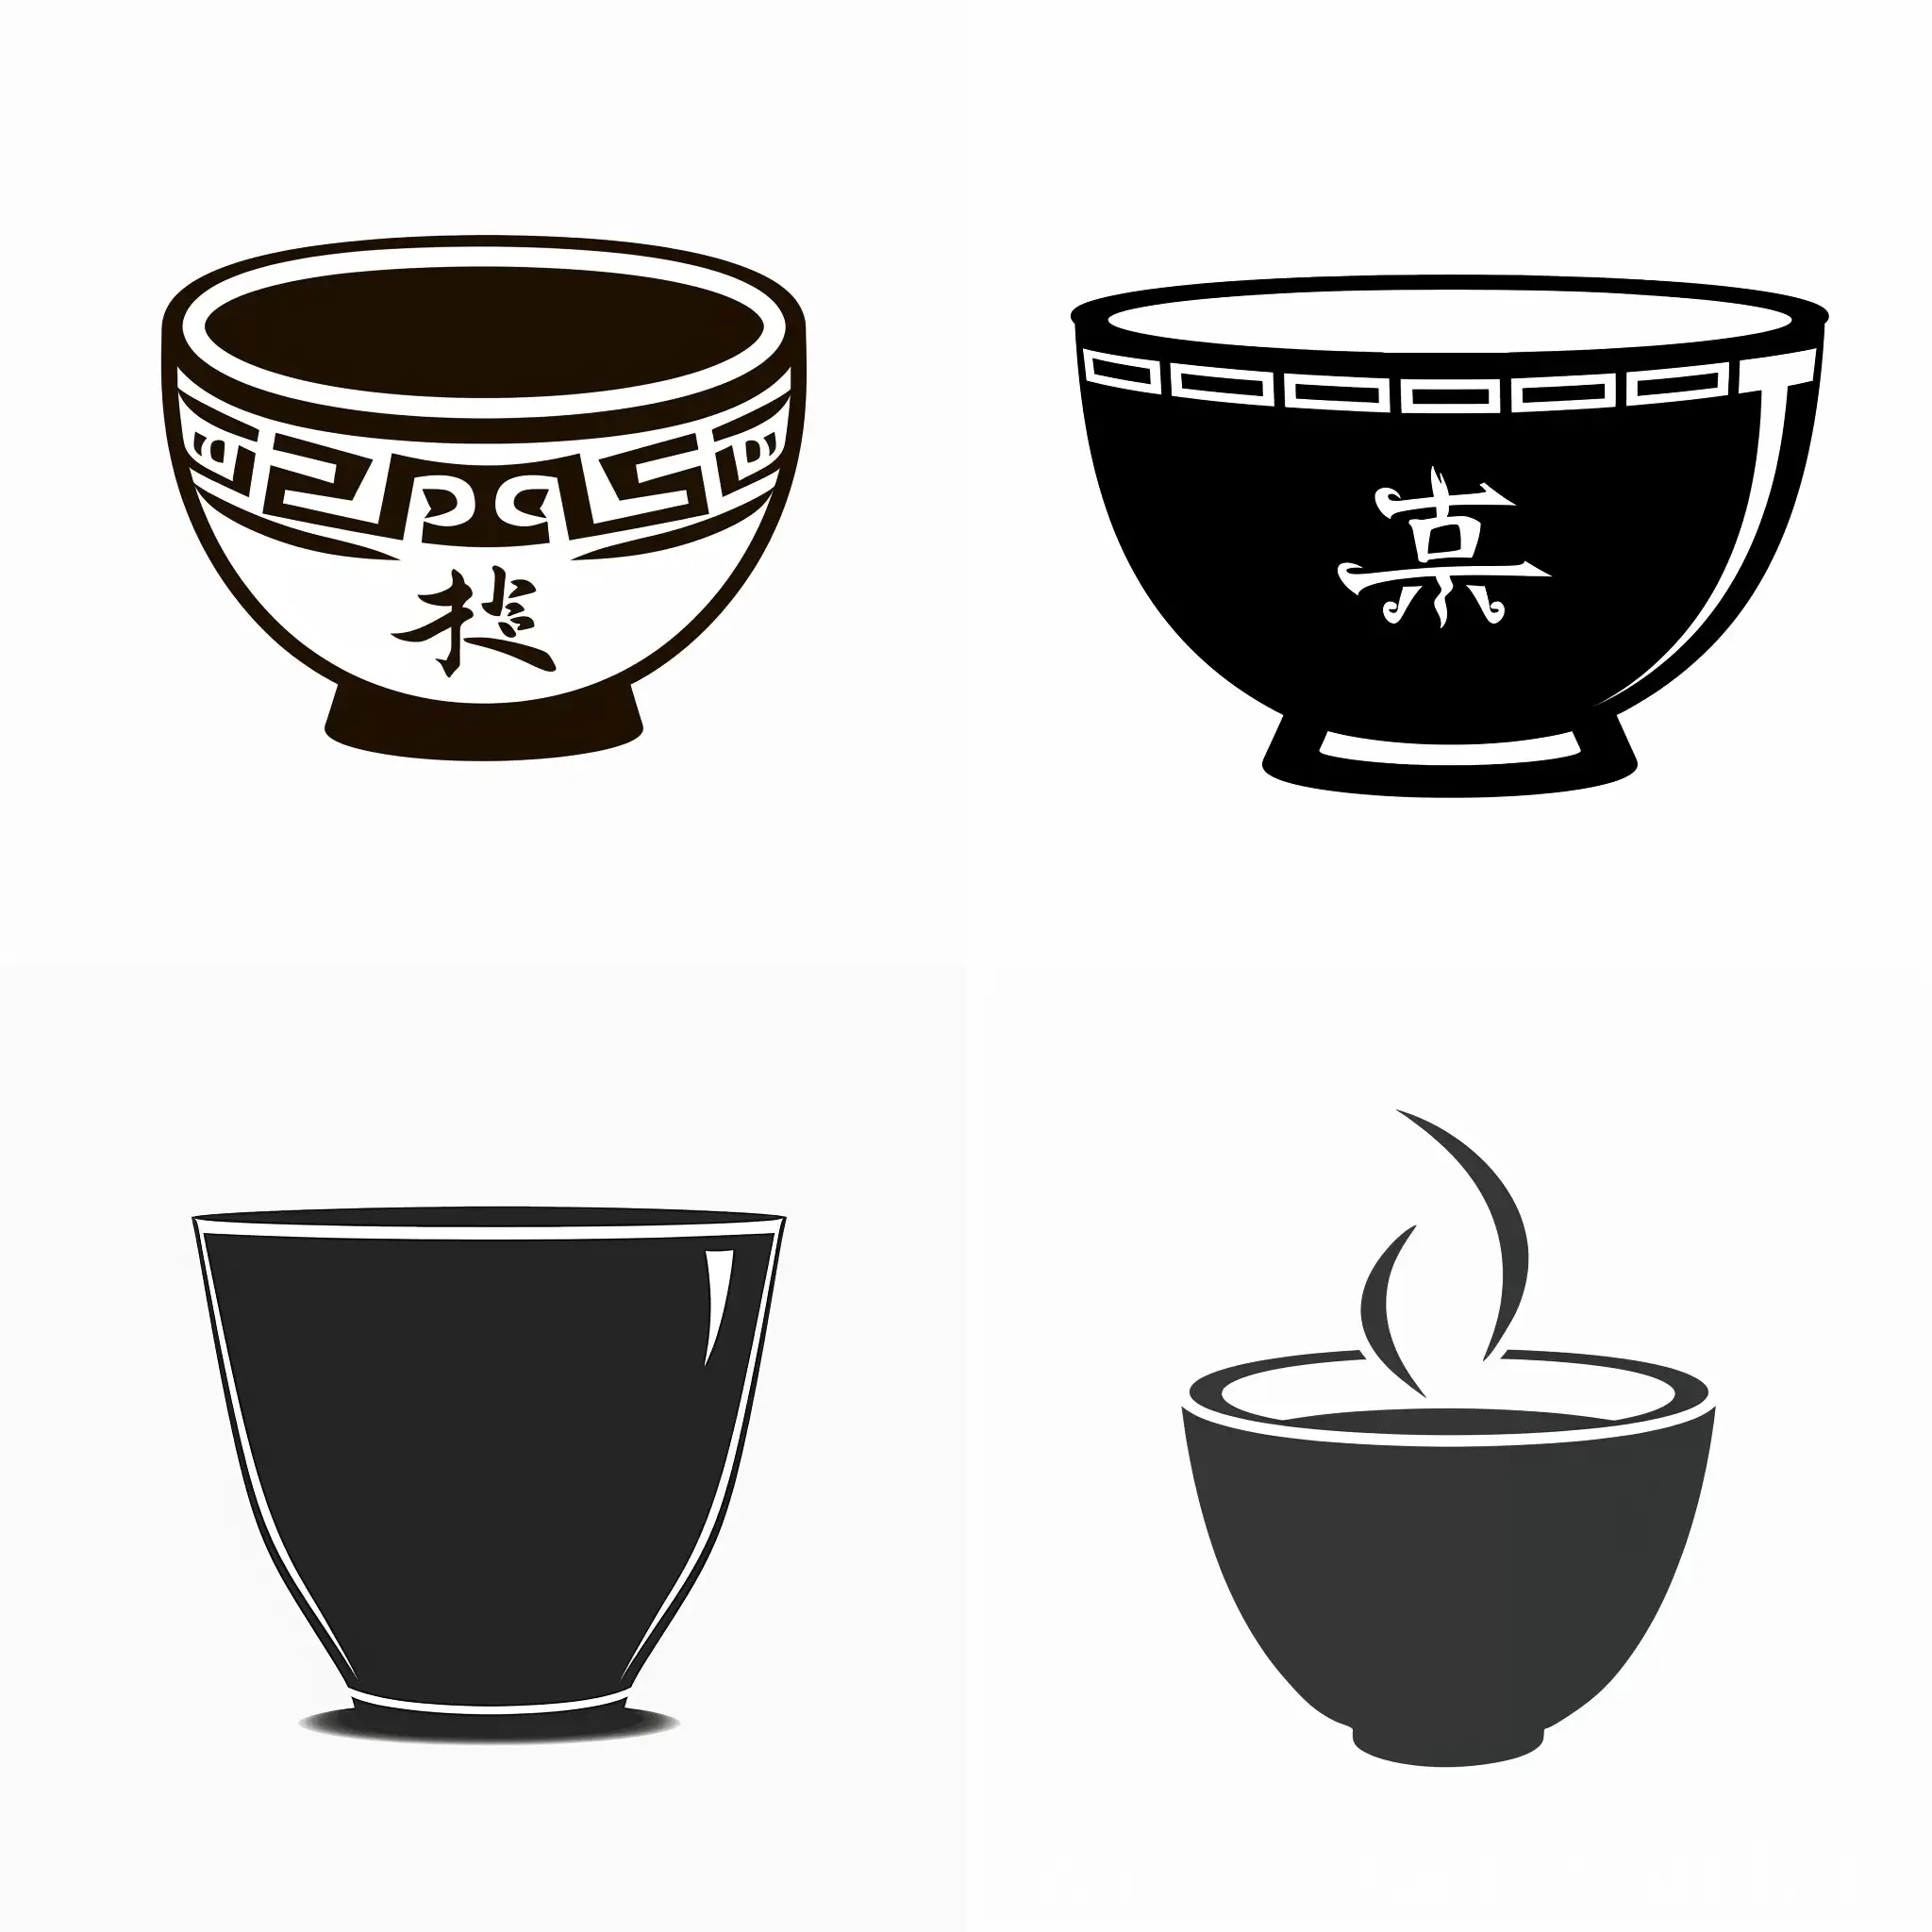 做一个logo
茶盏的形状
中国风
平面
黑白
艺术感
关于陶瓷的
简洁